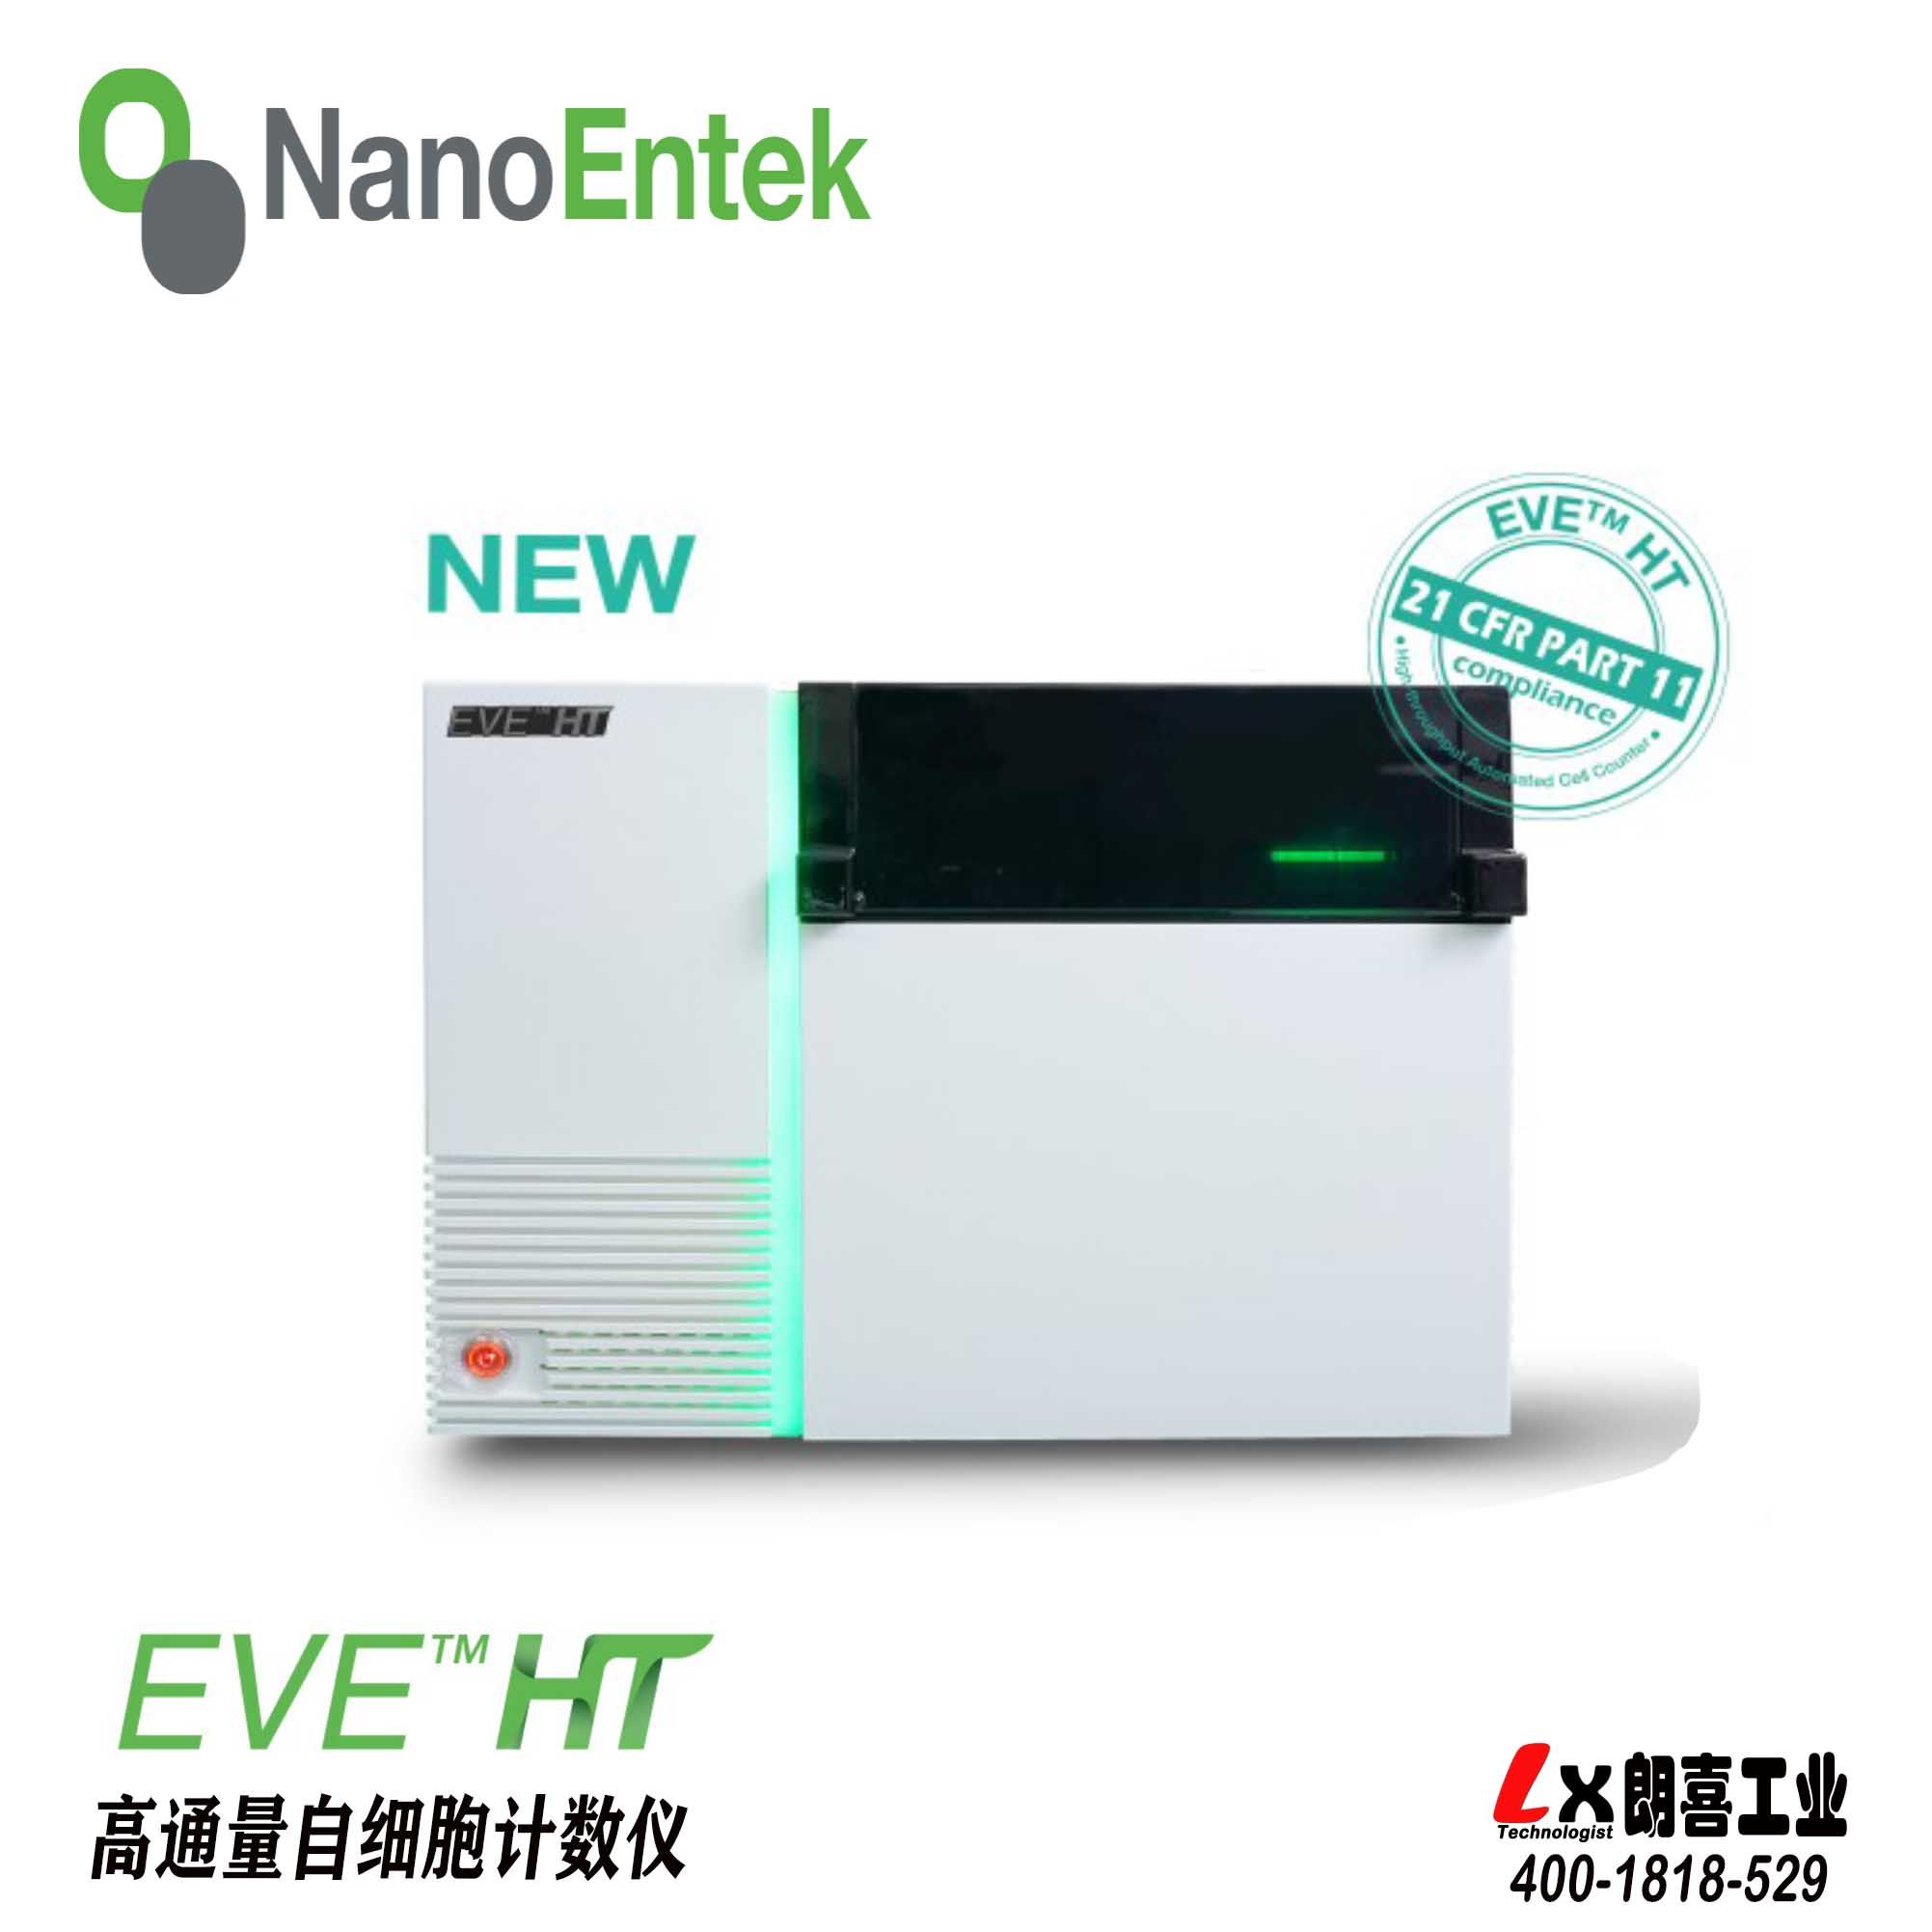 韩国NanoEntek高通量细胞计数仪EVE HT